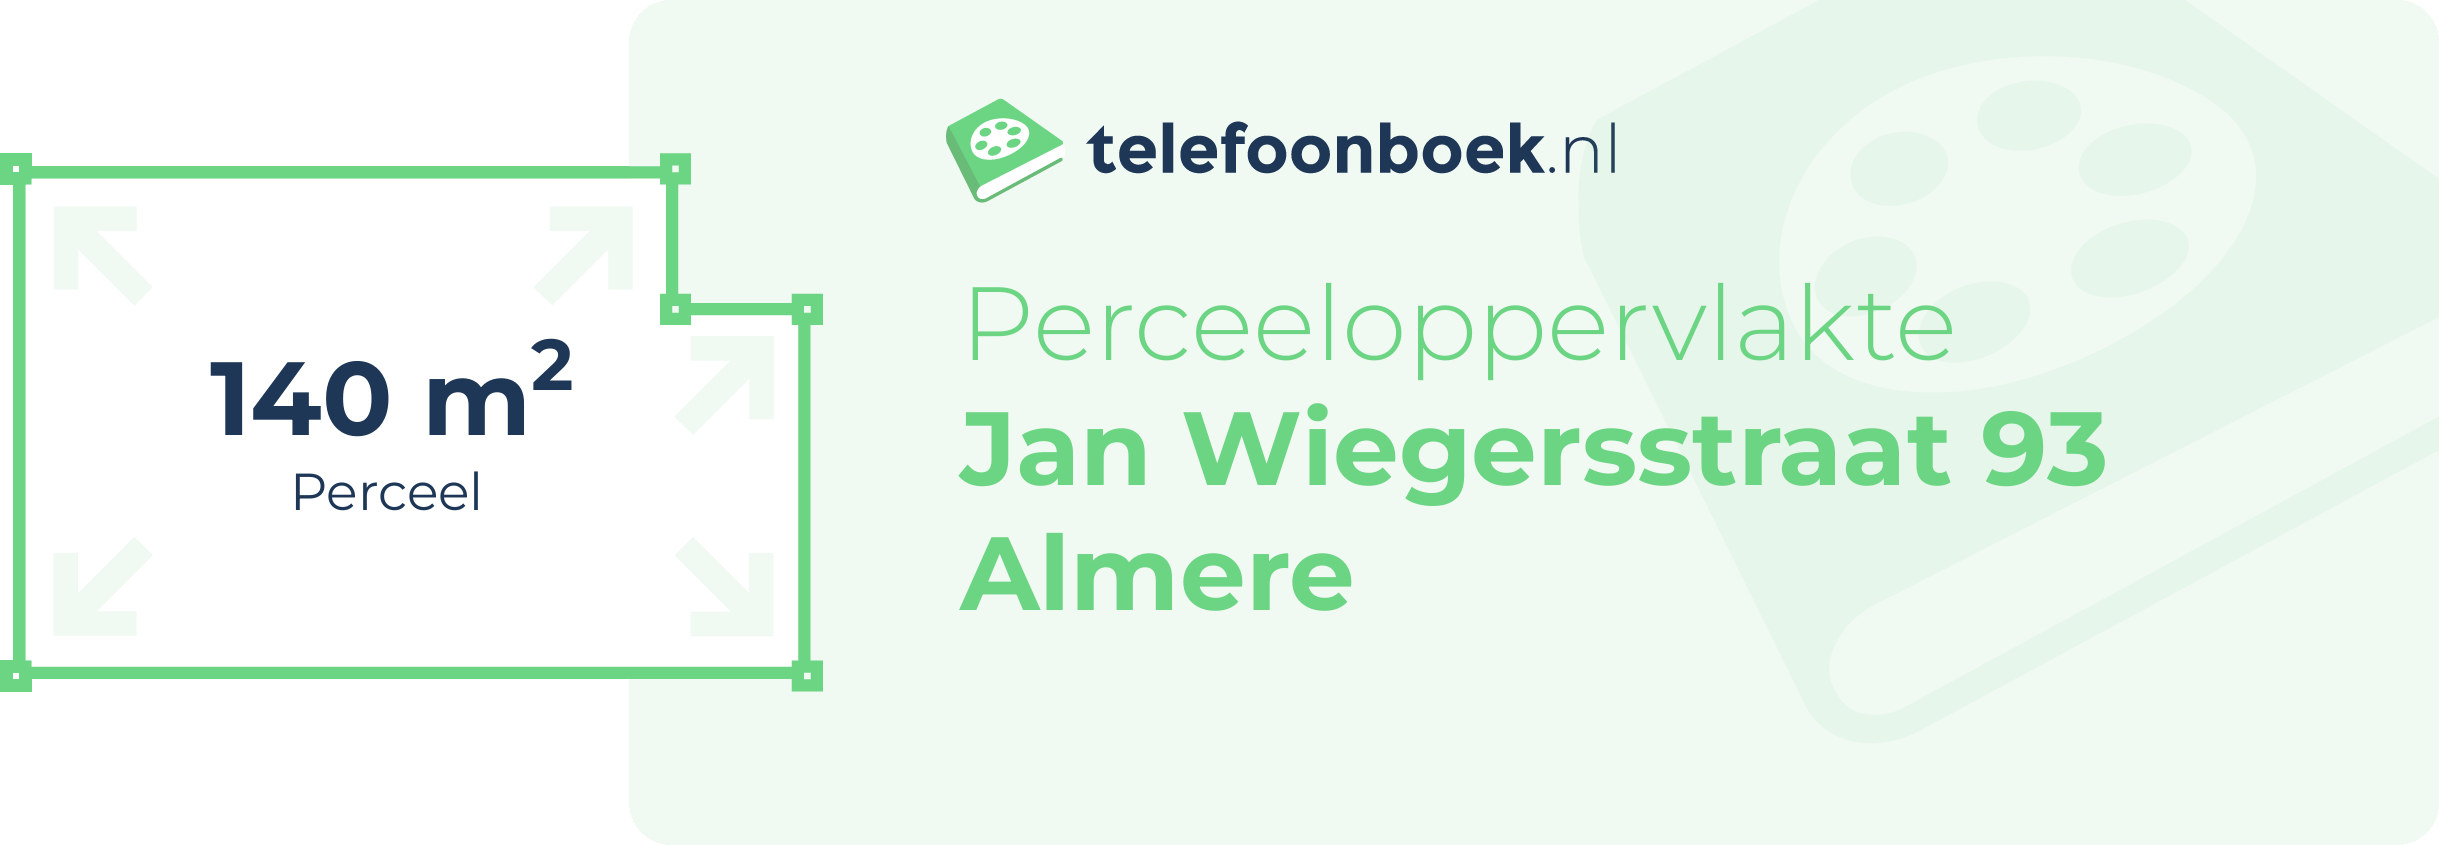 Perceeloppervlakte Jan Wiegersstraat 93 Almere